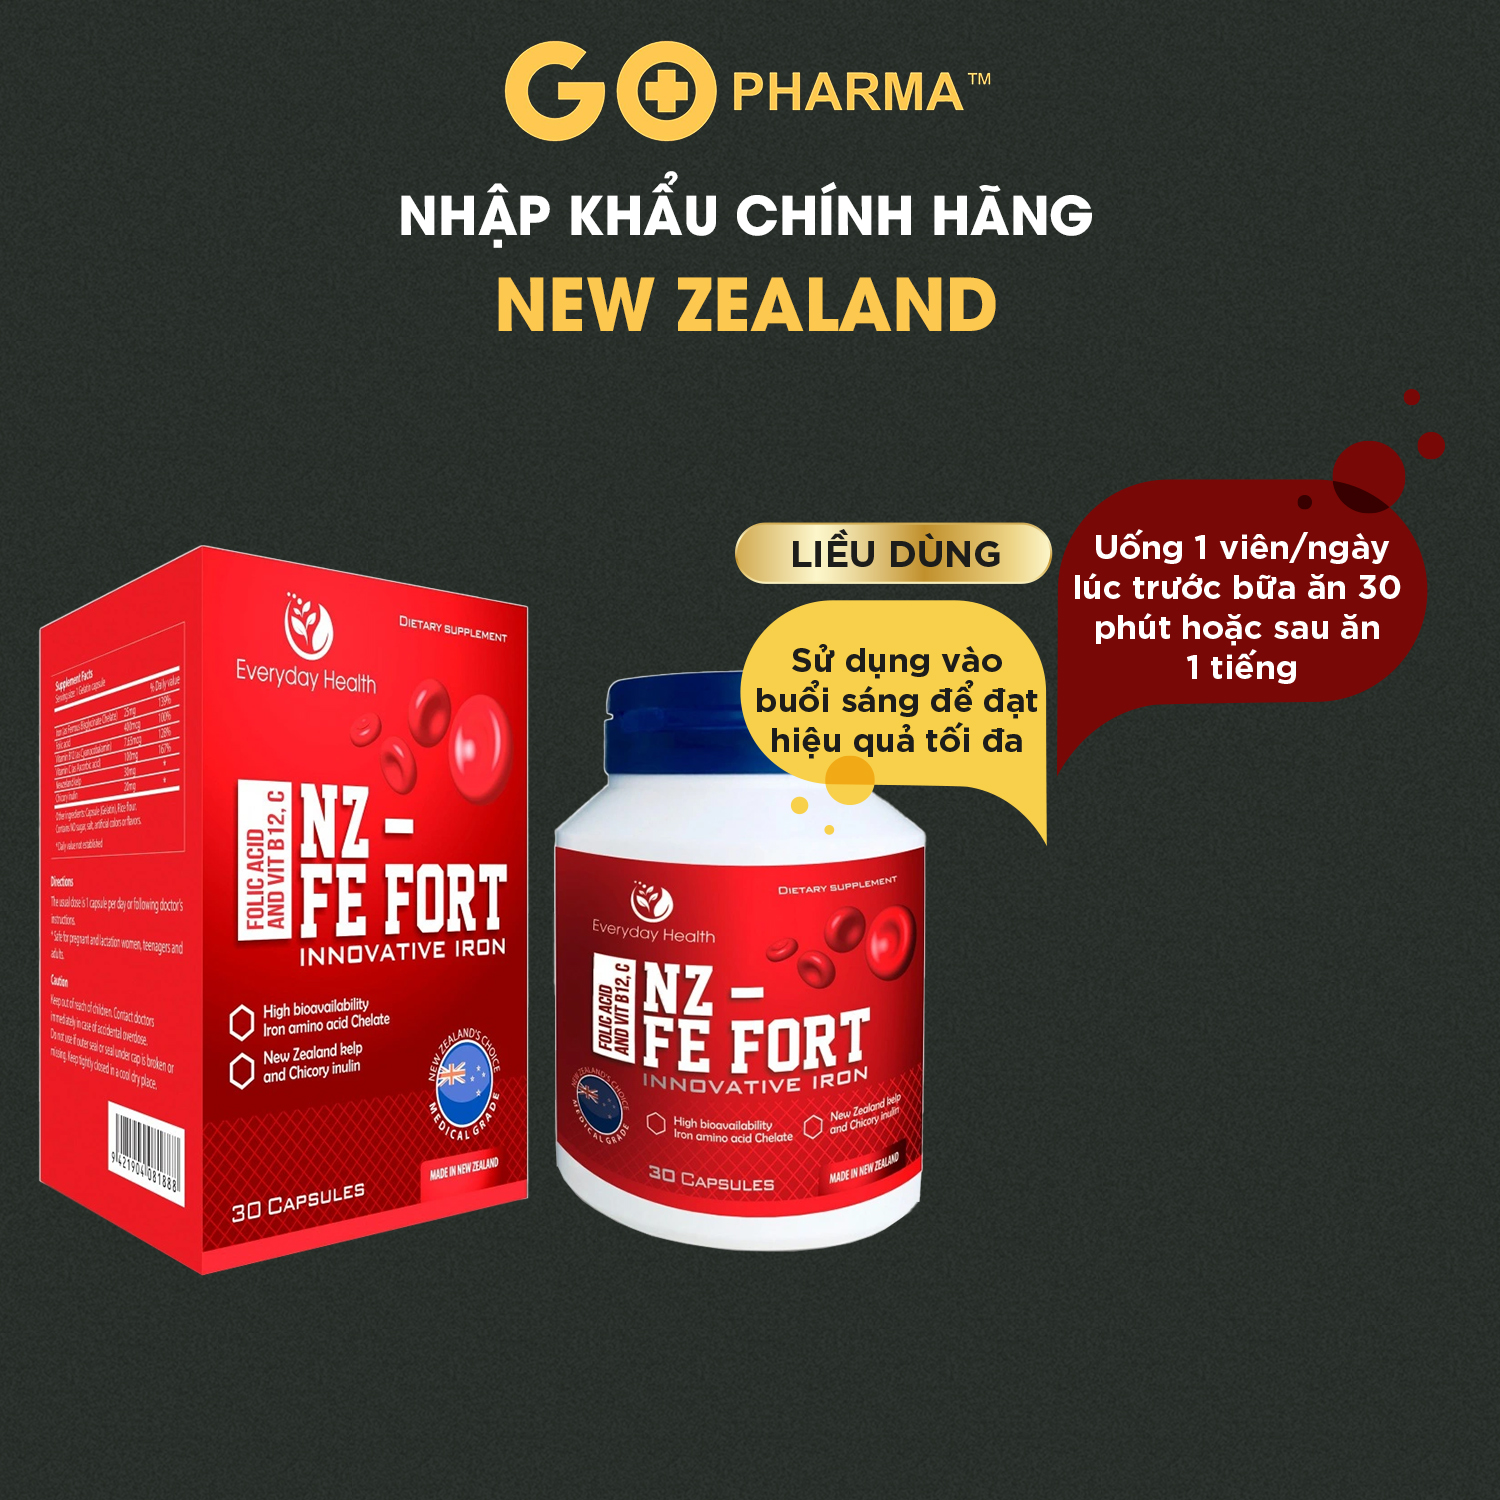 Viên uống sắt hữu cơ Everyday Health NZ - Fe Fort nhập khẩu NewZealand bổ sung sắt cho bà bầu và các đối tượng thiếu sắt